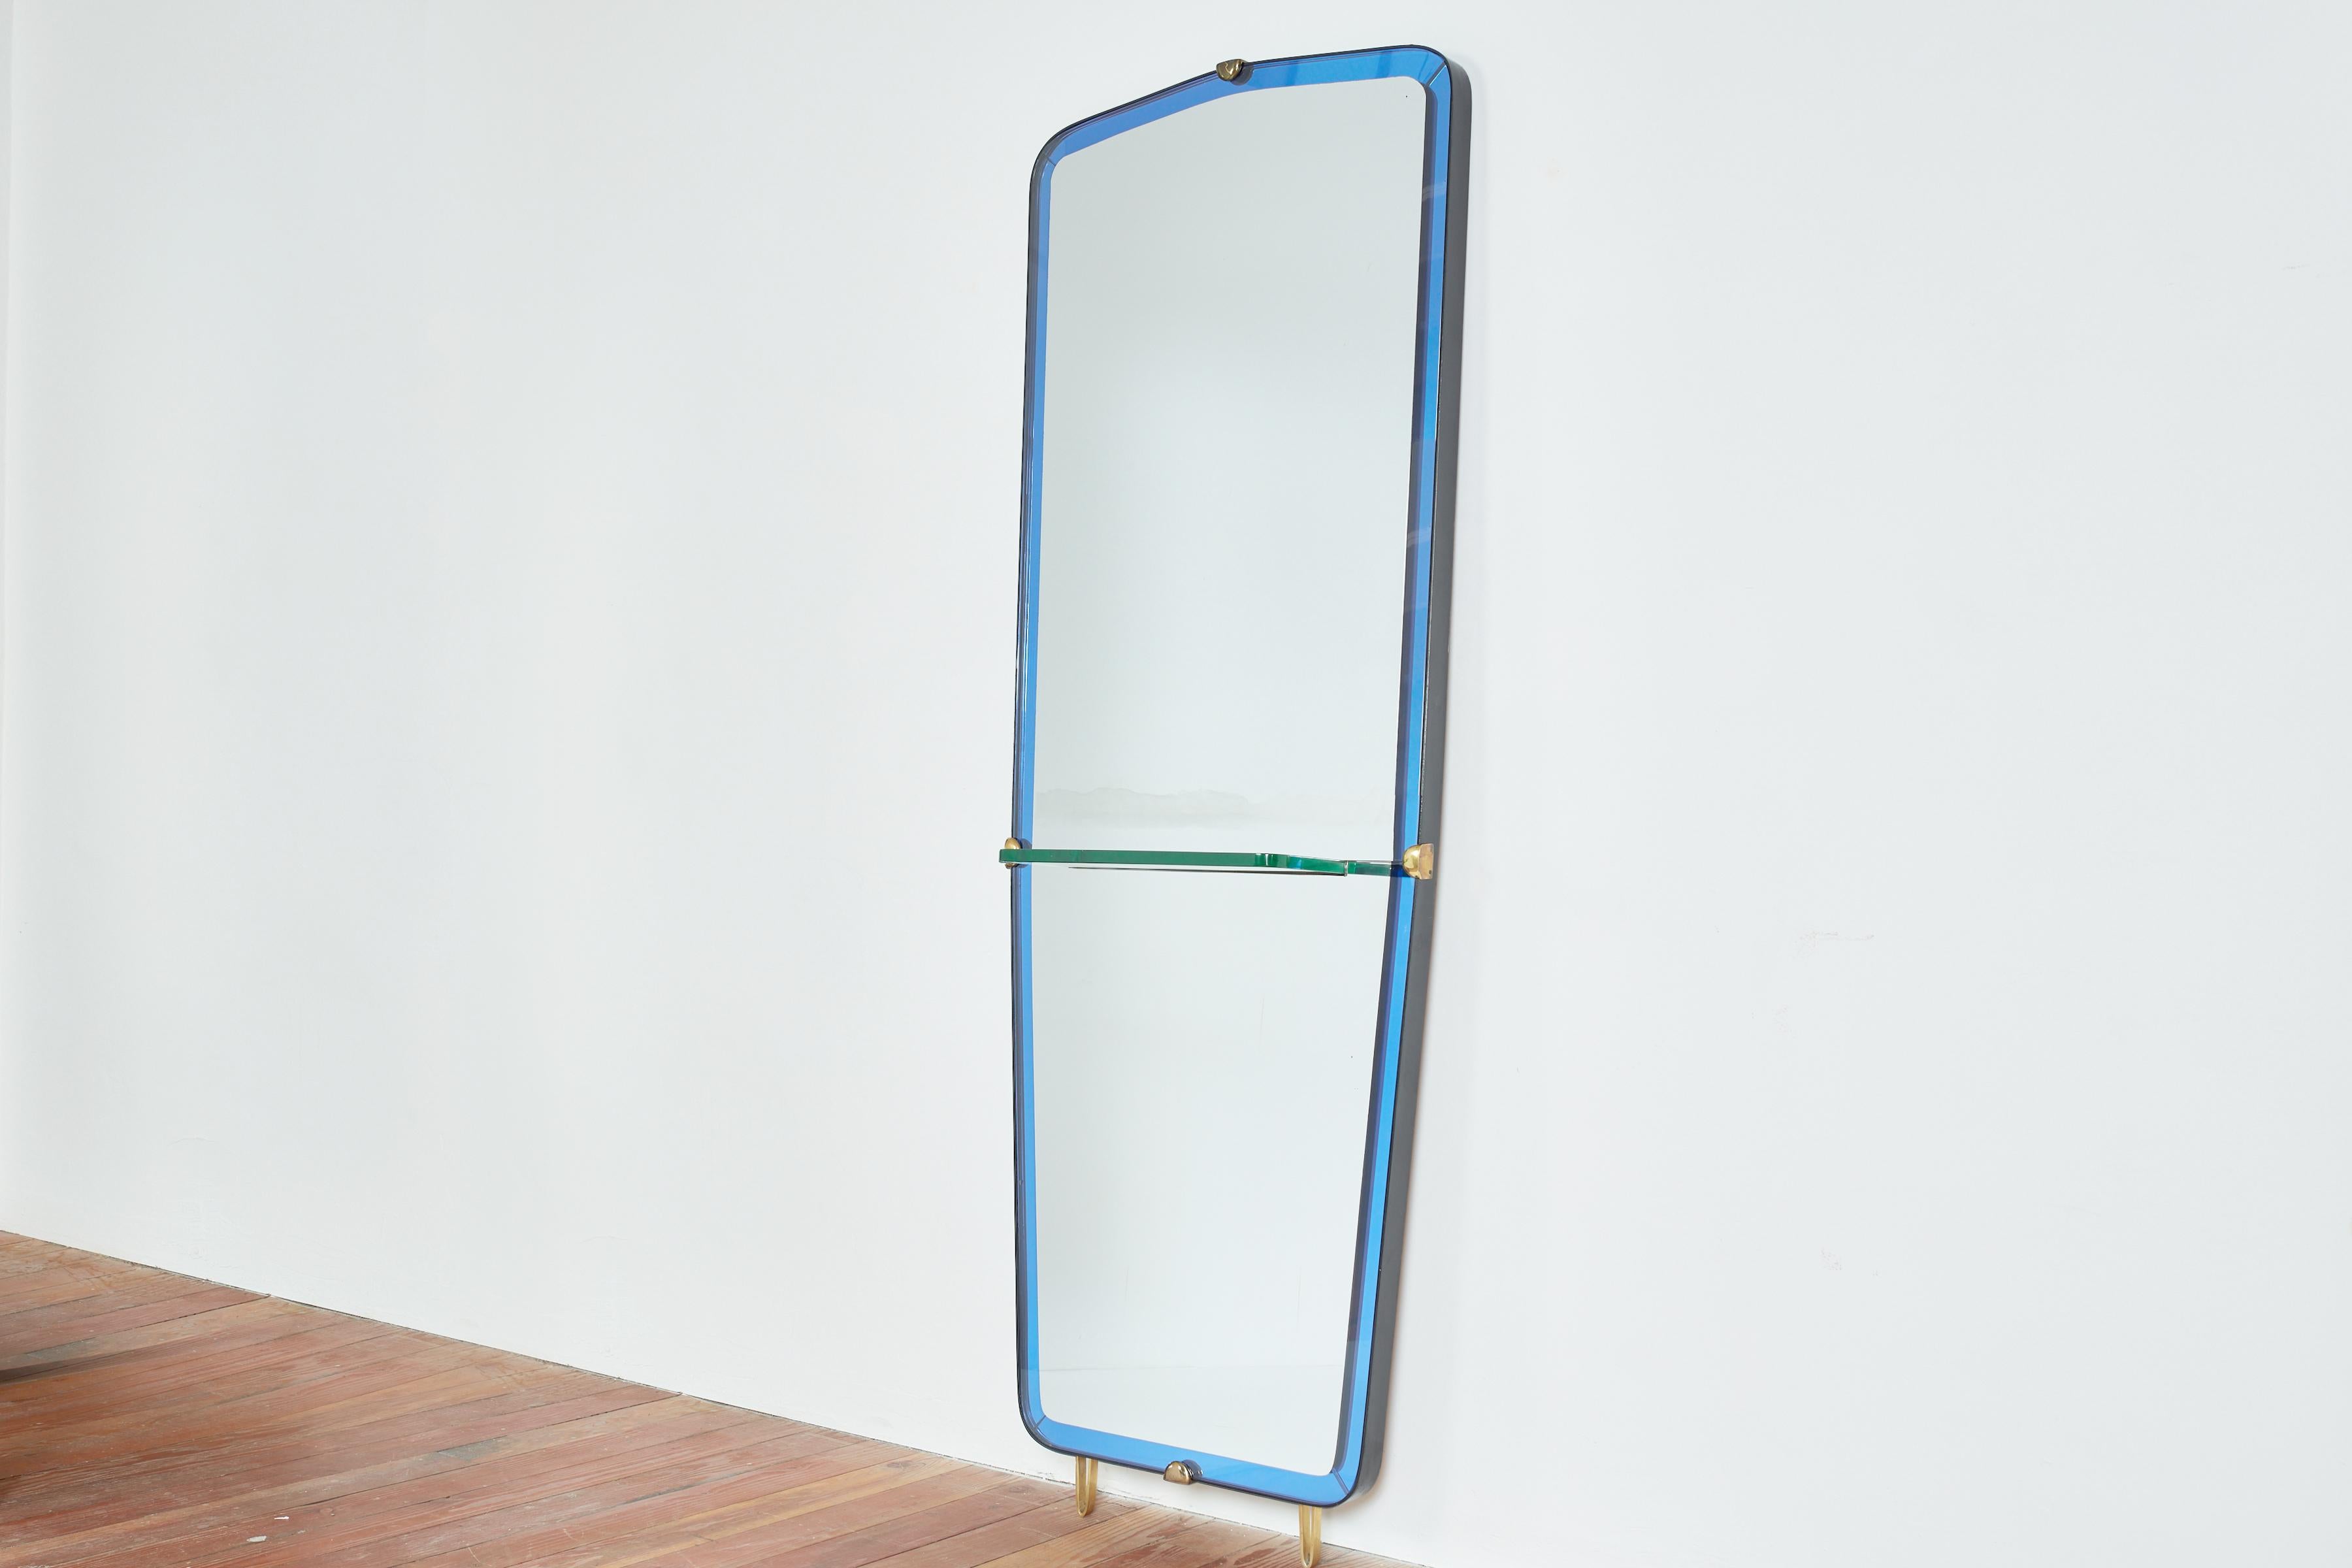 Magnifique grand miroir mural Cristal Art avec verre cristal bleu brillant et étagère en verre épais. 
Belle forme avec des accents en laiton et des pieds en épingle à cheveux en laiton. 

Italie années 1960